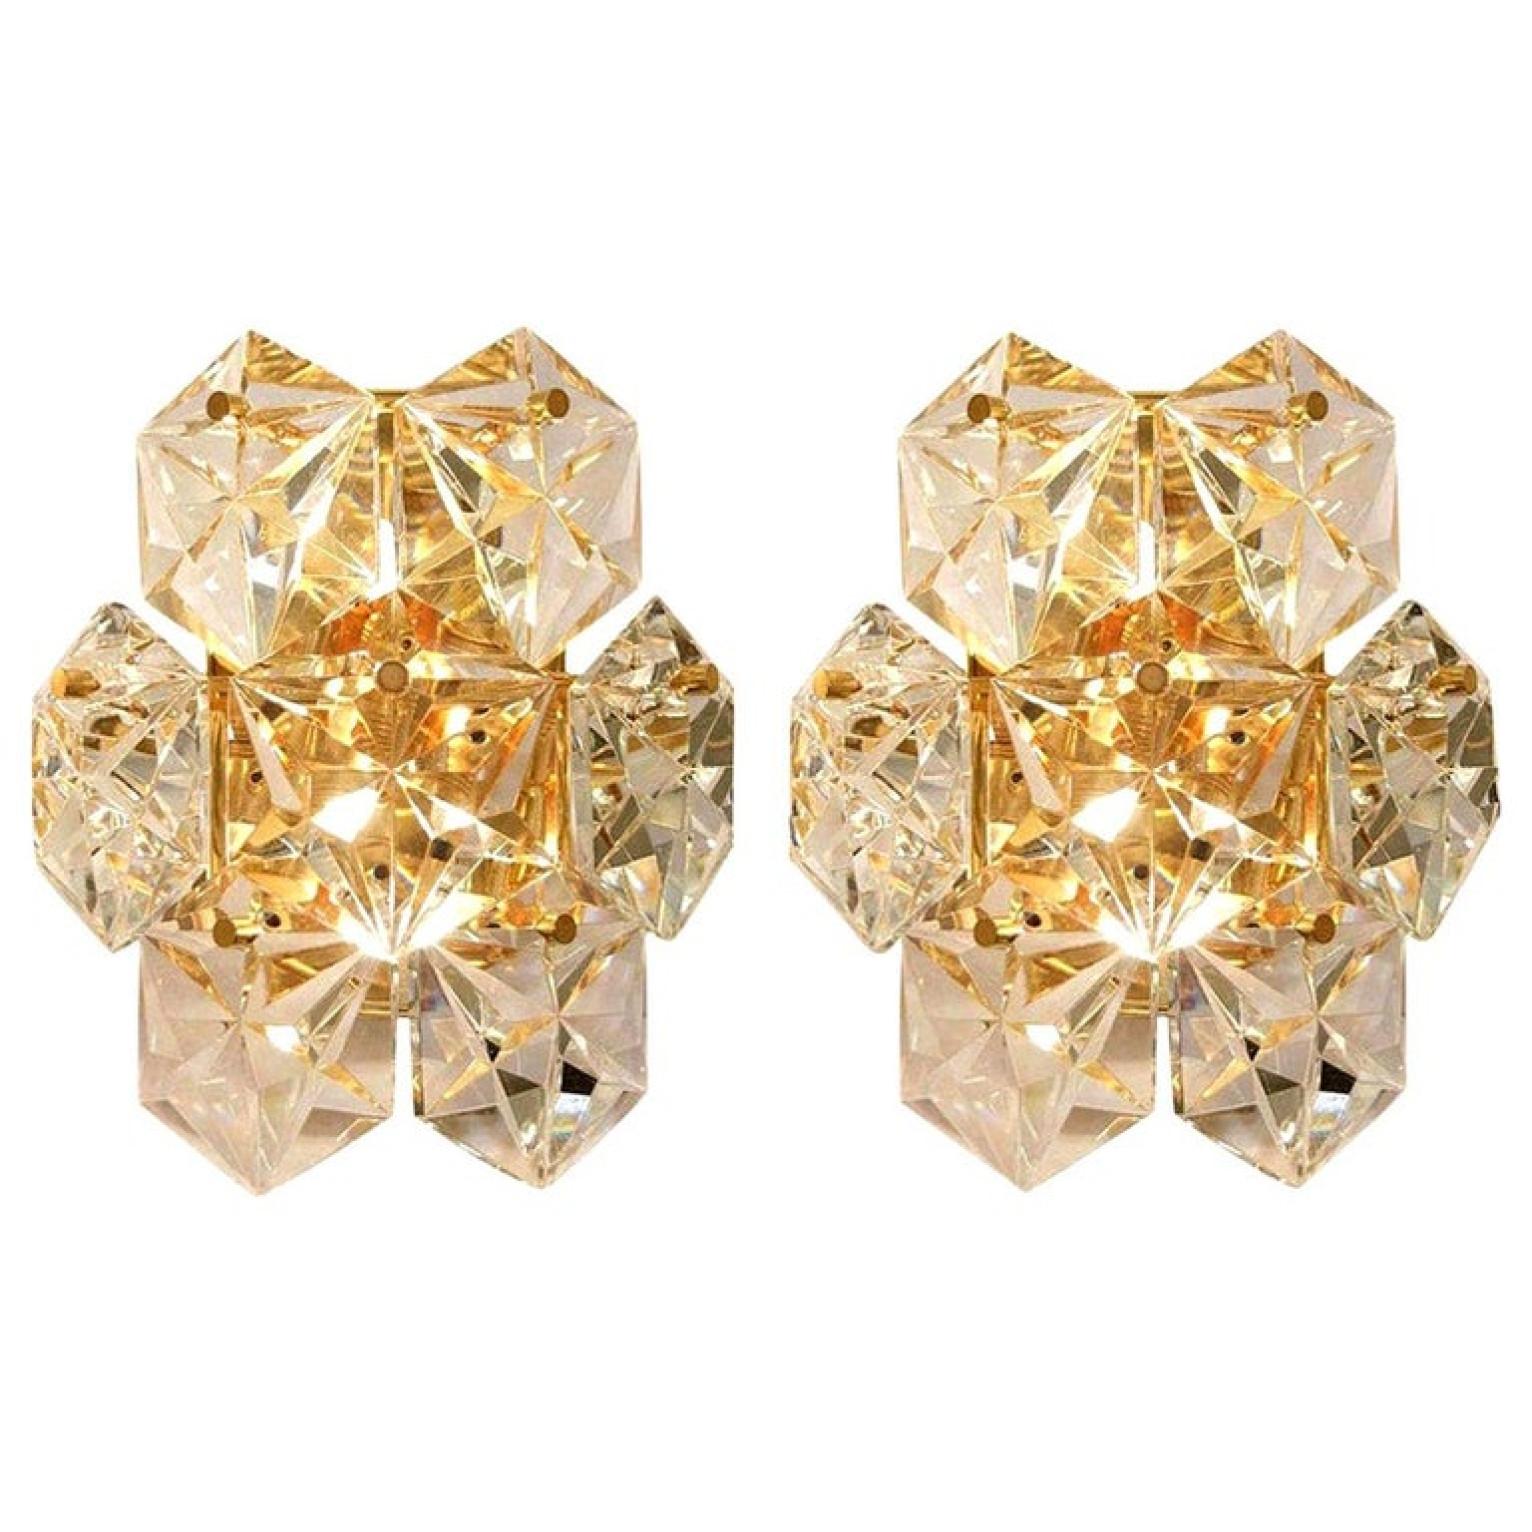 Eines der drei Paare luxuriöser vergoldeter Rahmen und dicker Diamantkristall-Wandleuchter des famosen Herstellers Kinkeldey. Zwei Lichtquellen. Sehr elegante Beleuchtungskörper, die zu allen Einrichtungsstilen passen. Die Kristalle sind sorgfältig